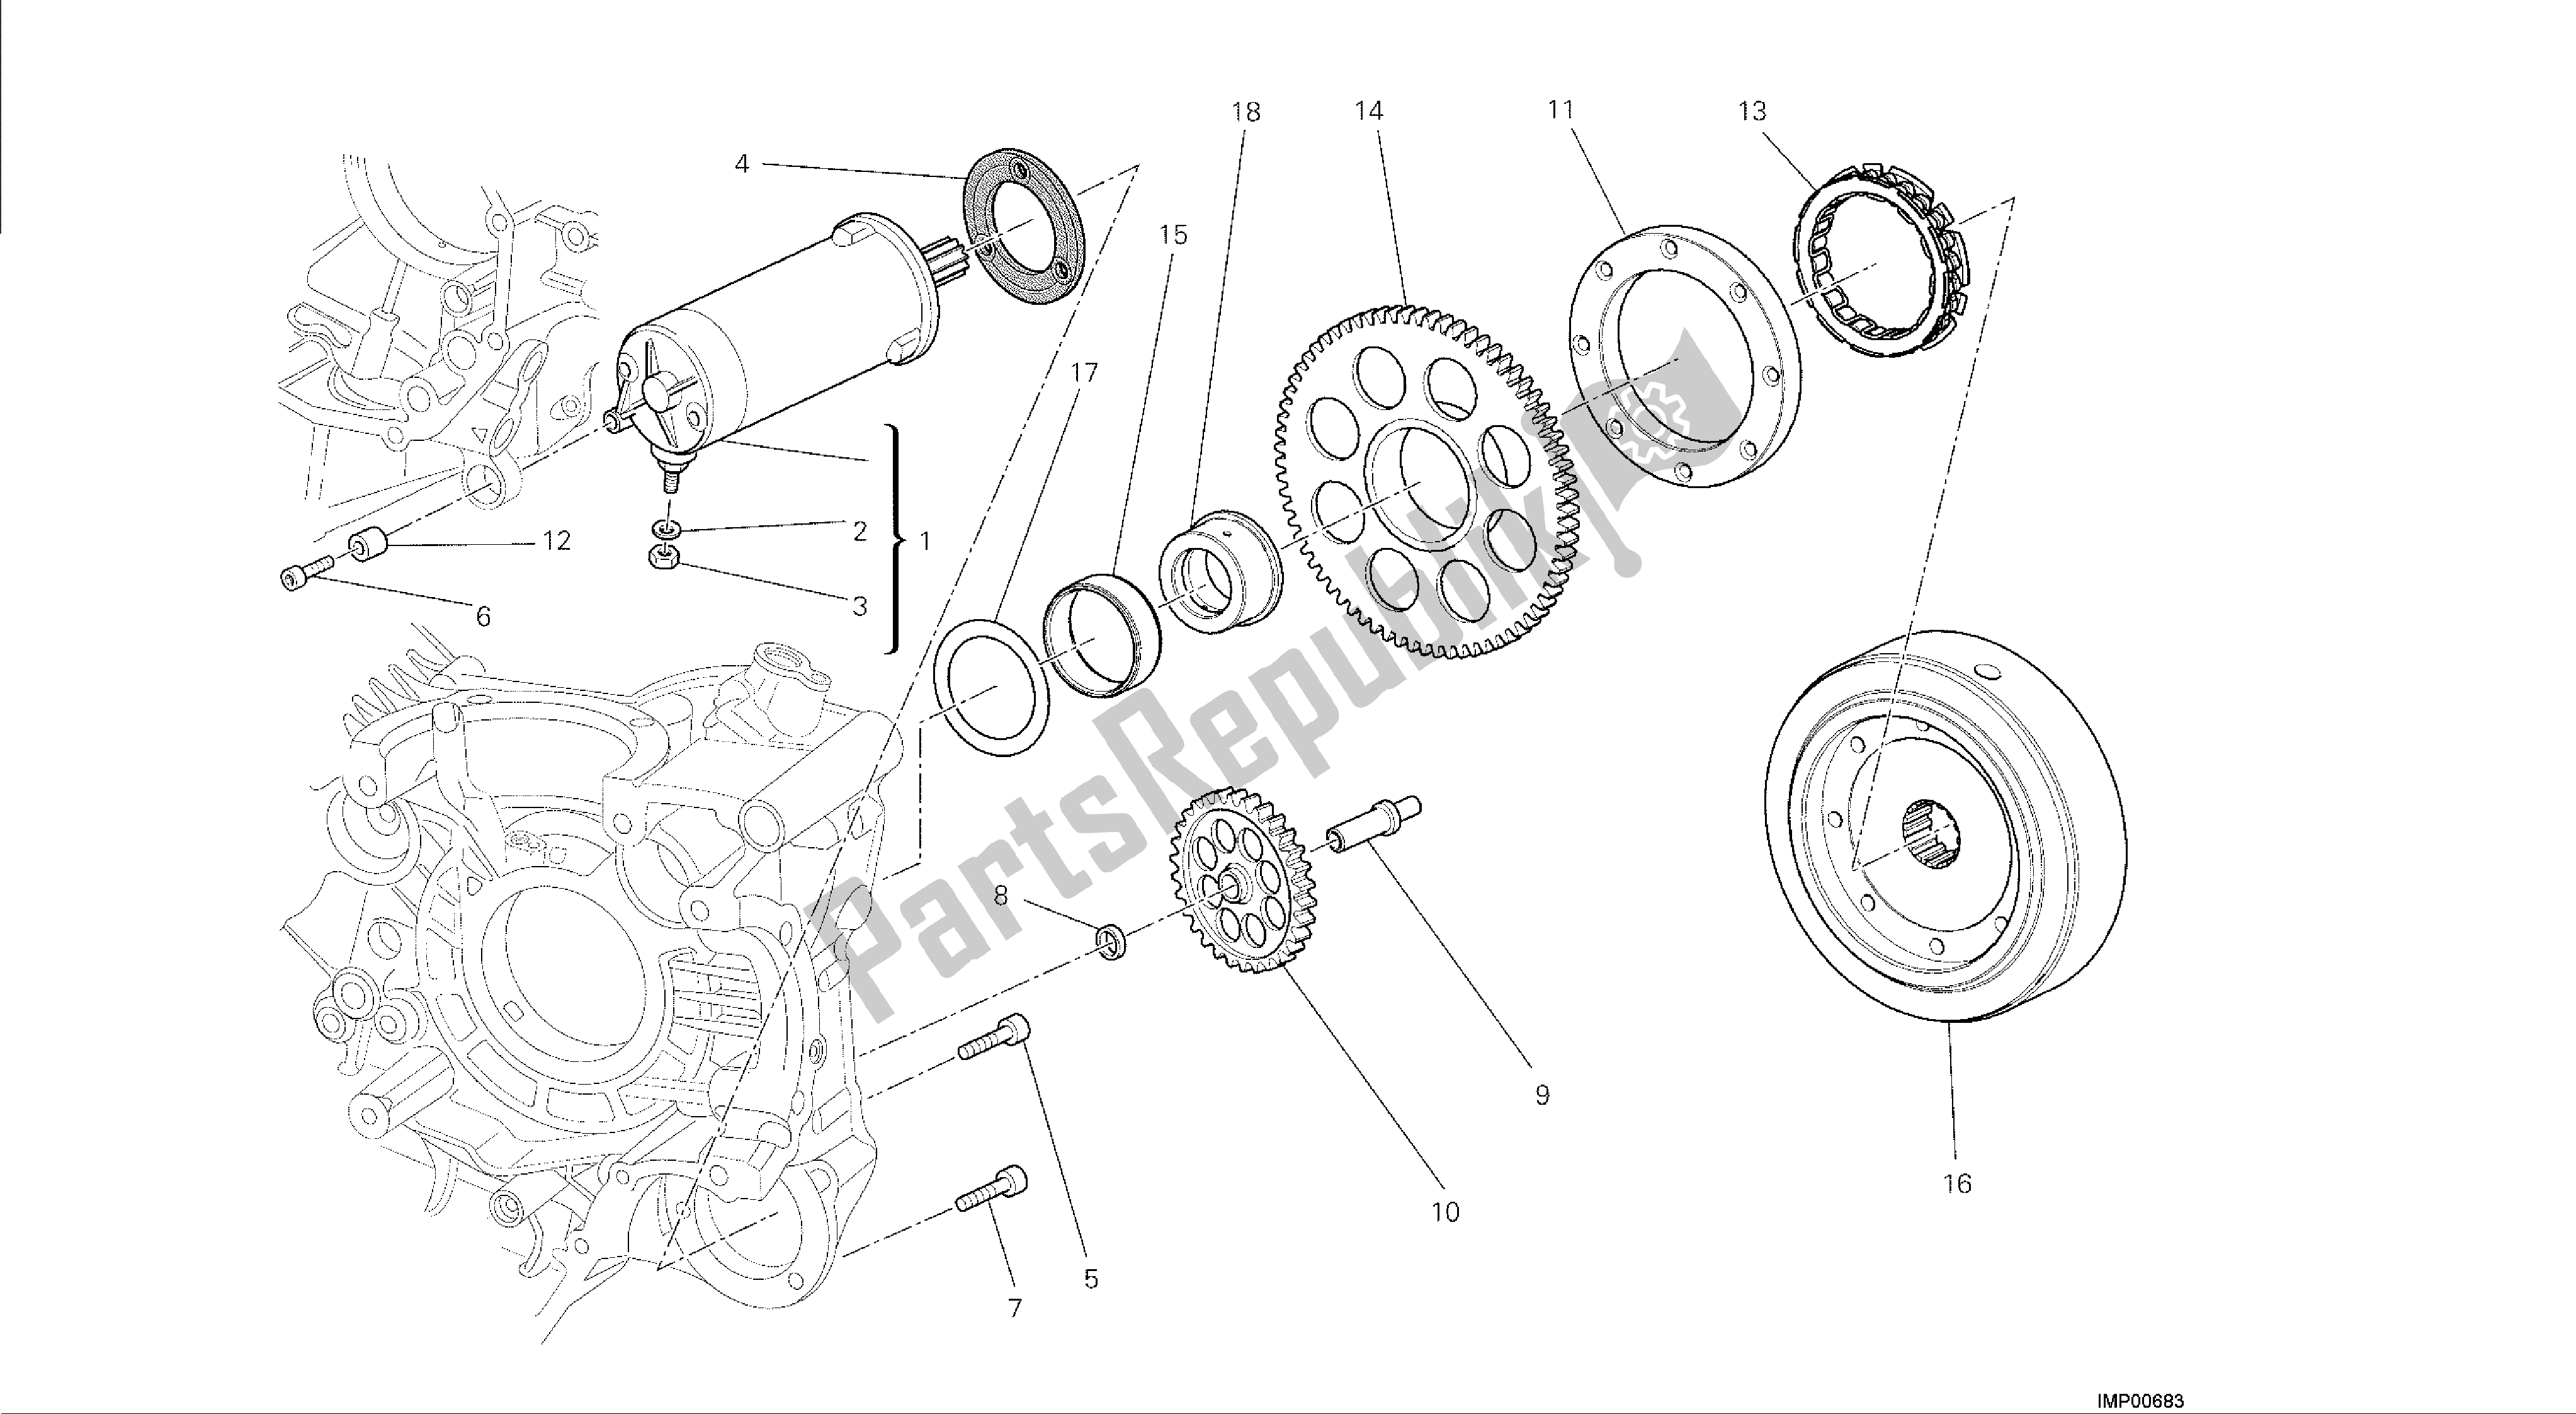 Todas las partes para Dibujo 012 - Motor De Grupo De Arranque Eléctrico Y Encendido [mod: M 1200] de Ducati Monster 1200 2014